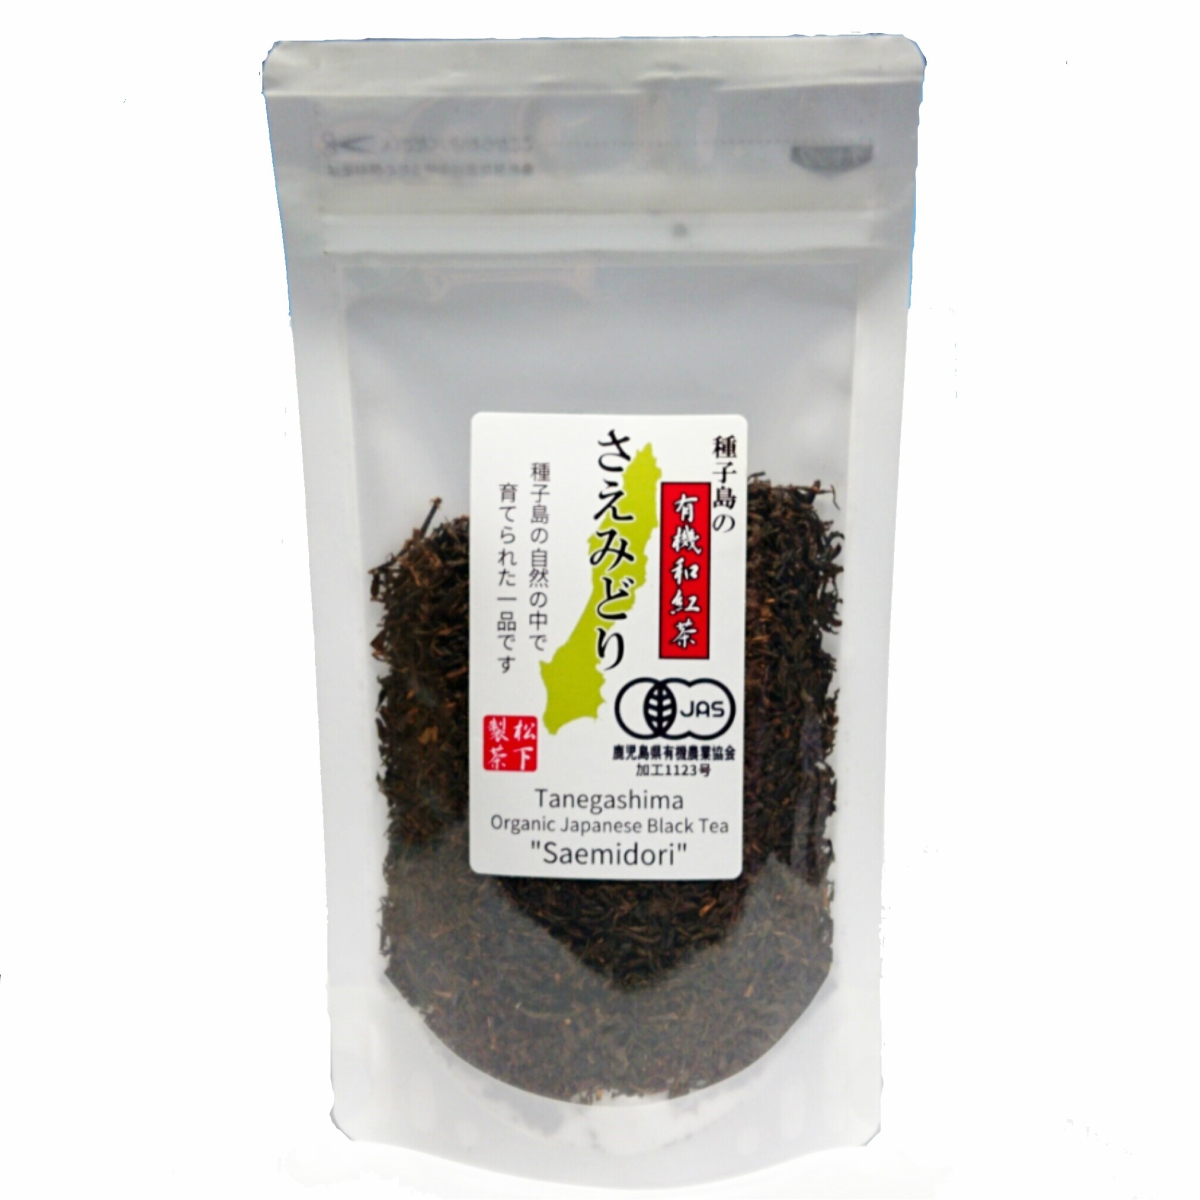 種子島の有機和紅茶『さえみどり』 茶葉(リーフ) 60g 松下製茶